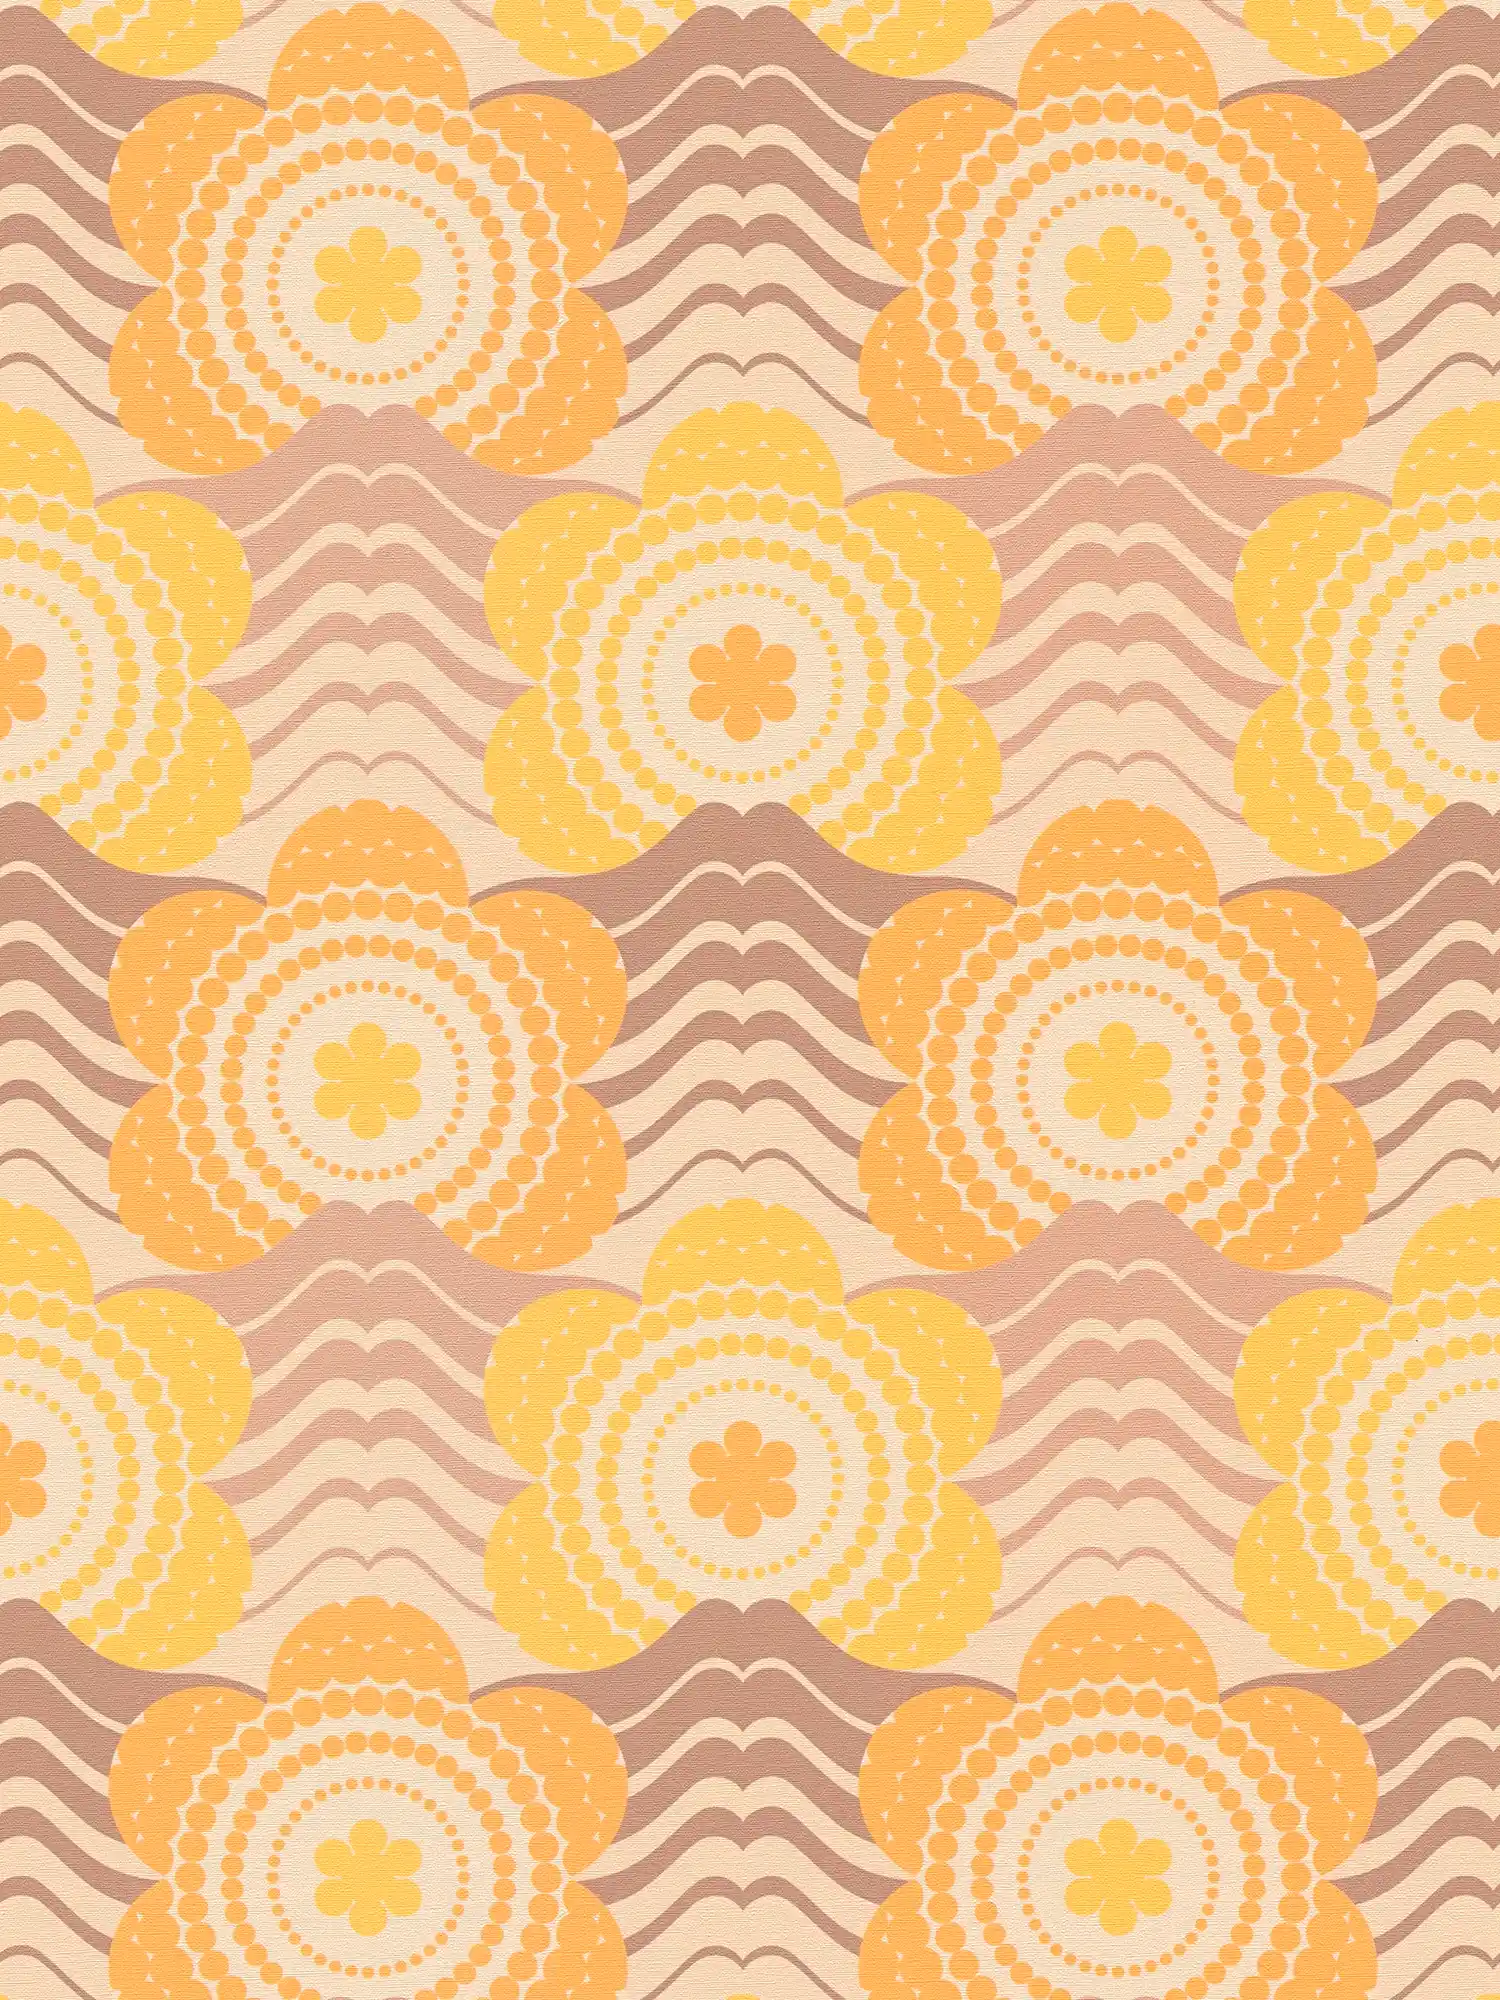 Papel pintado no tejido con motivos florales en estilo años 70 - beige, marrón, naranja
